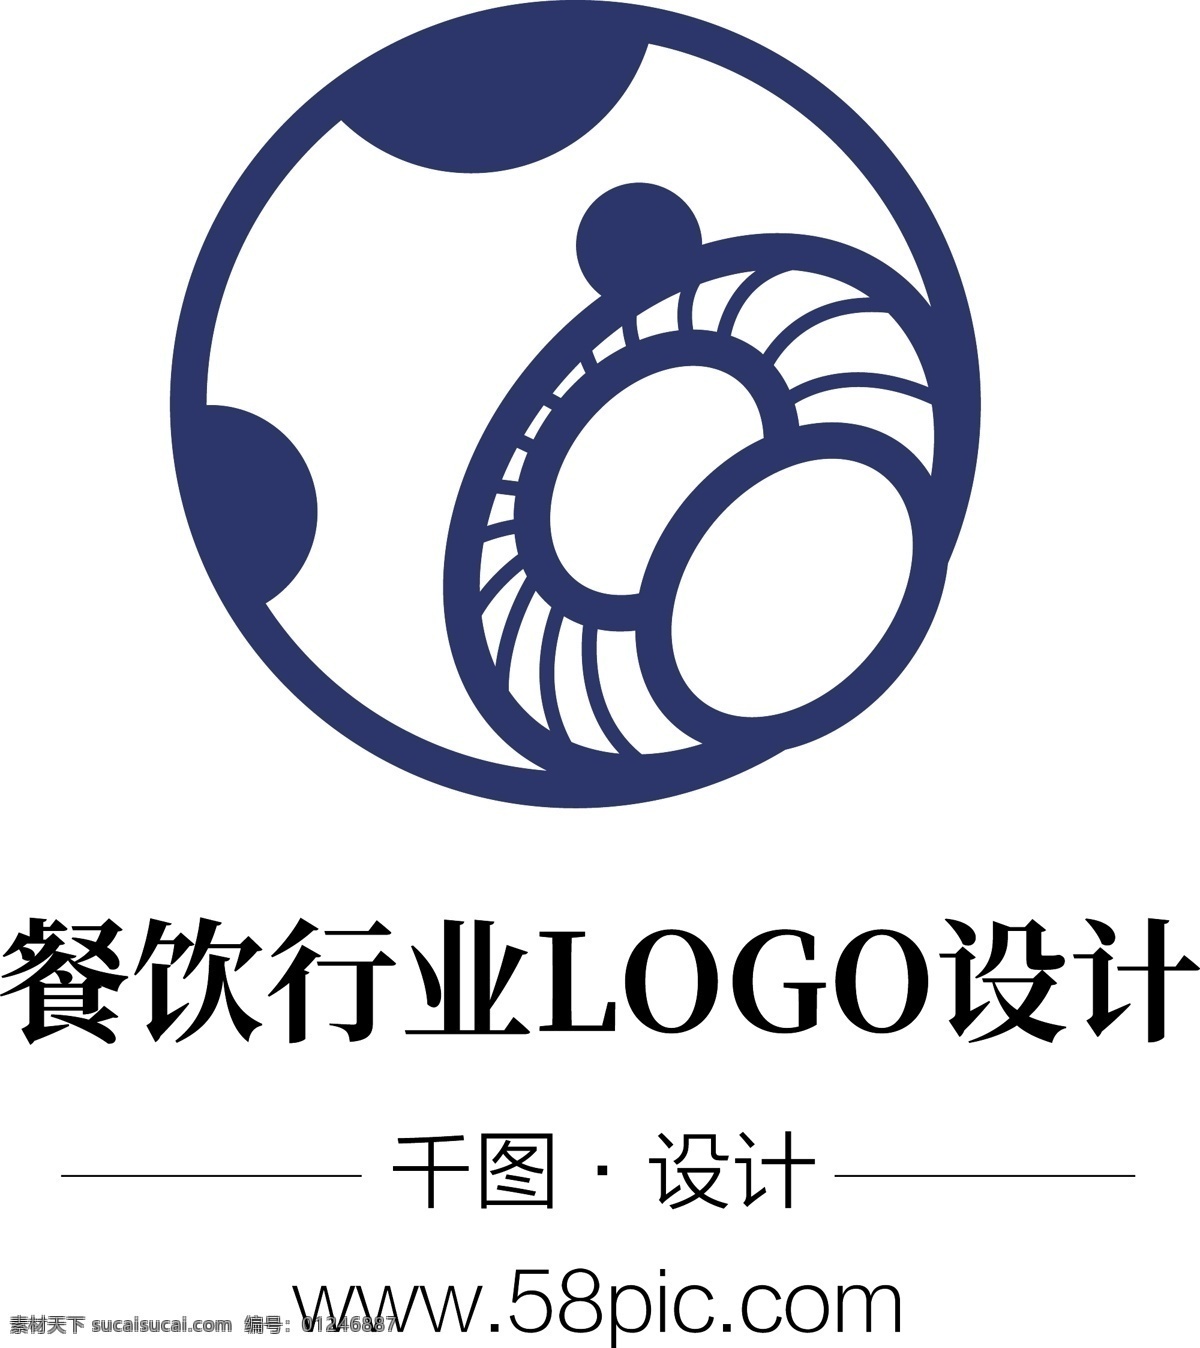 餐饮 行业 野生菌 餐厅 菌 火锅店 logo 餐厅logo 扁平 风 卡通蘑菇元素